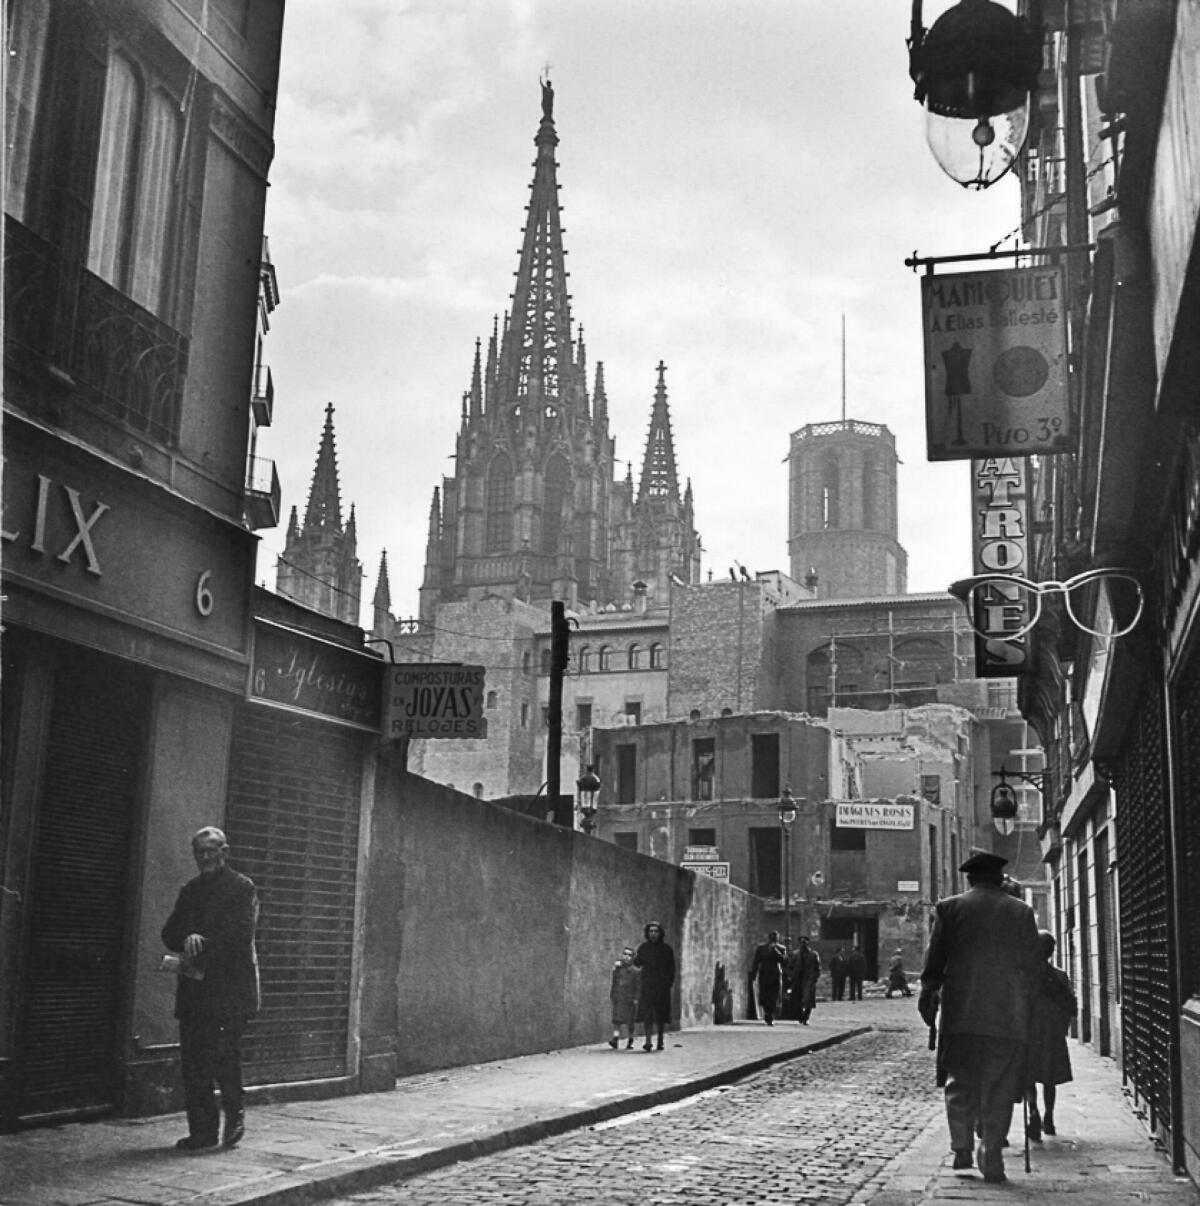 Foto en blanc i negre. Es veu el carrer dels Arcs amb la Catedral al fons i gent caminant